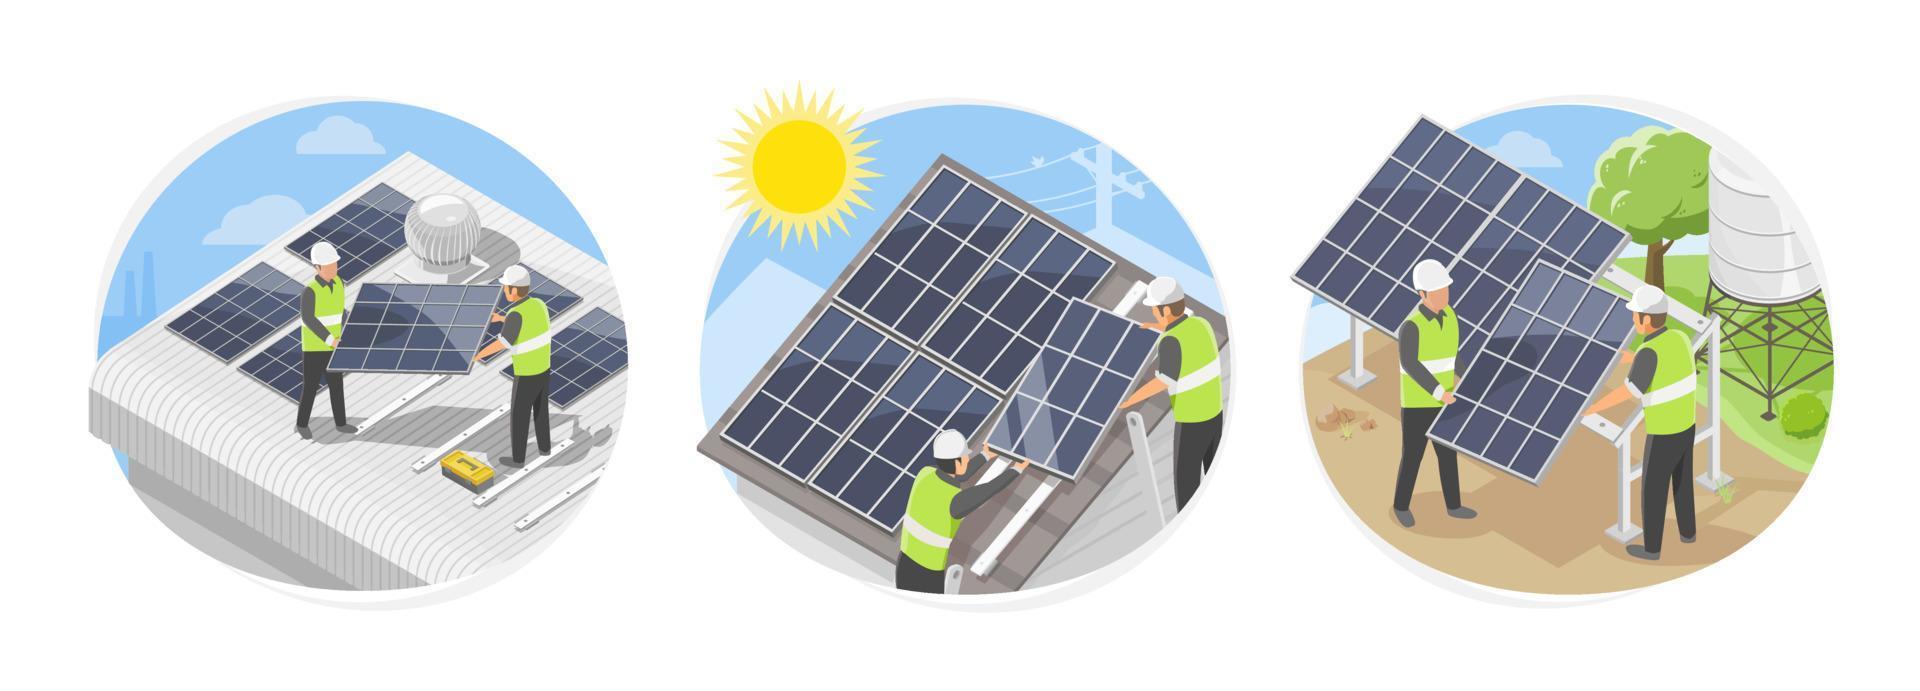 Solarzellen-Dach-Installationsteam-Service-Symbolkonzept für Fabriklagerhaus und landwirtschaftliche Installateurökologie grüner Strom isometrischer Isolatvektor vektor